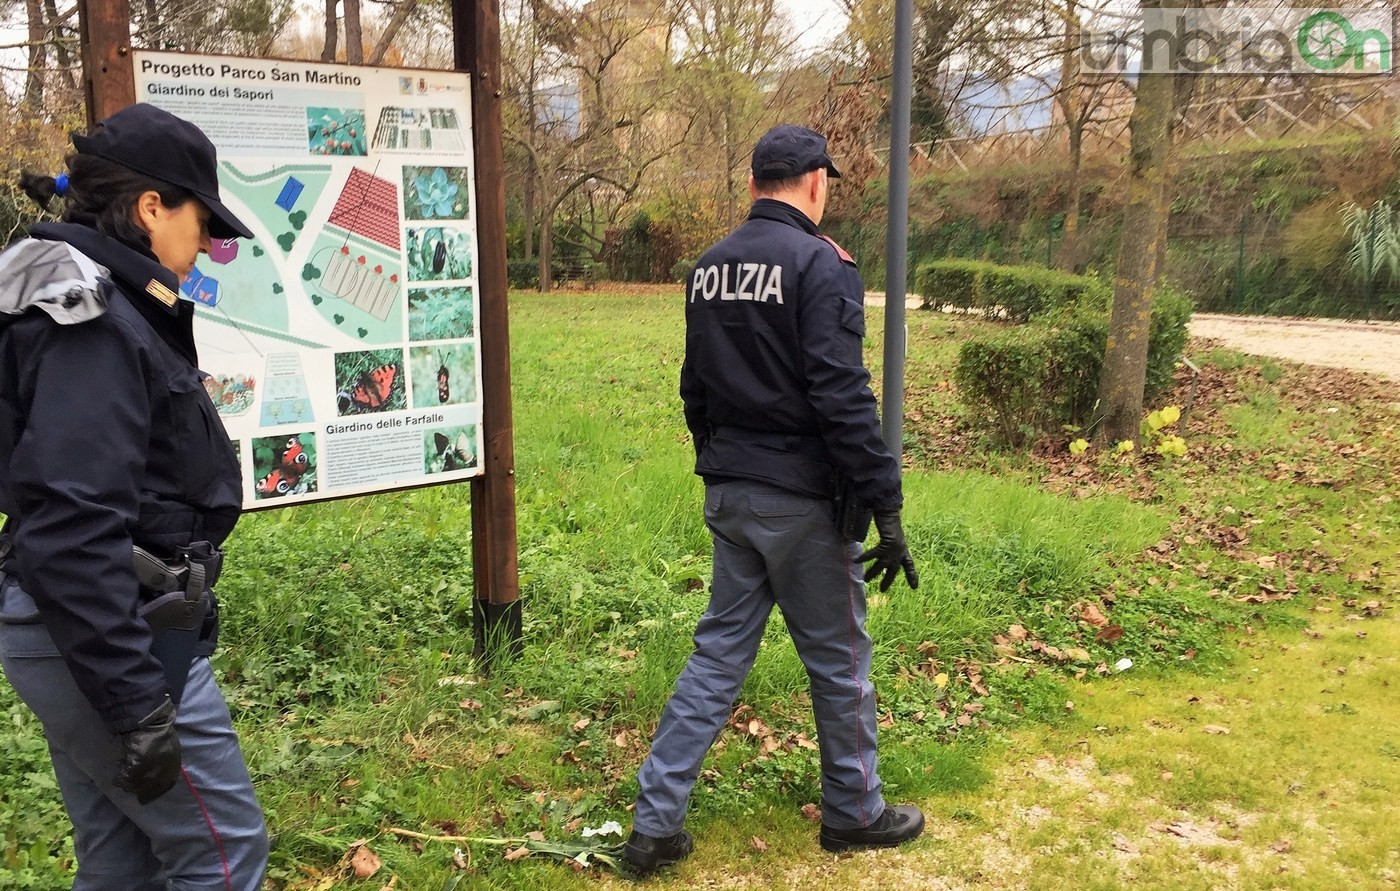 Parco fluviale urbano San Martino, polizia Volante. Controlli droga degrado - 2 dicembre 2016 (18)